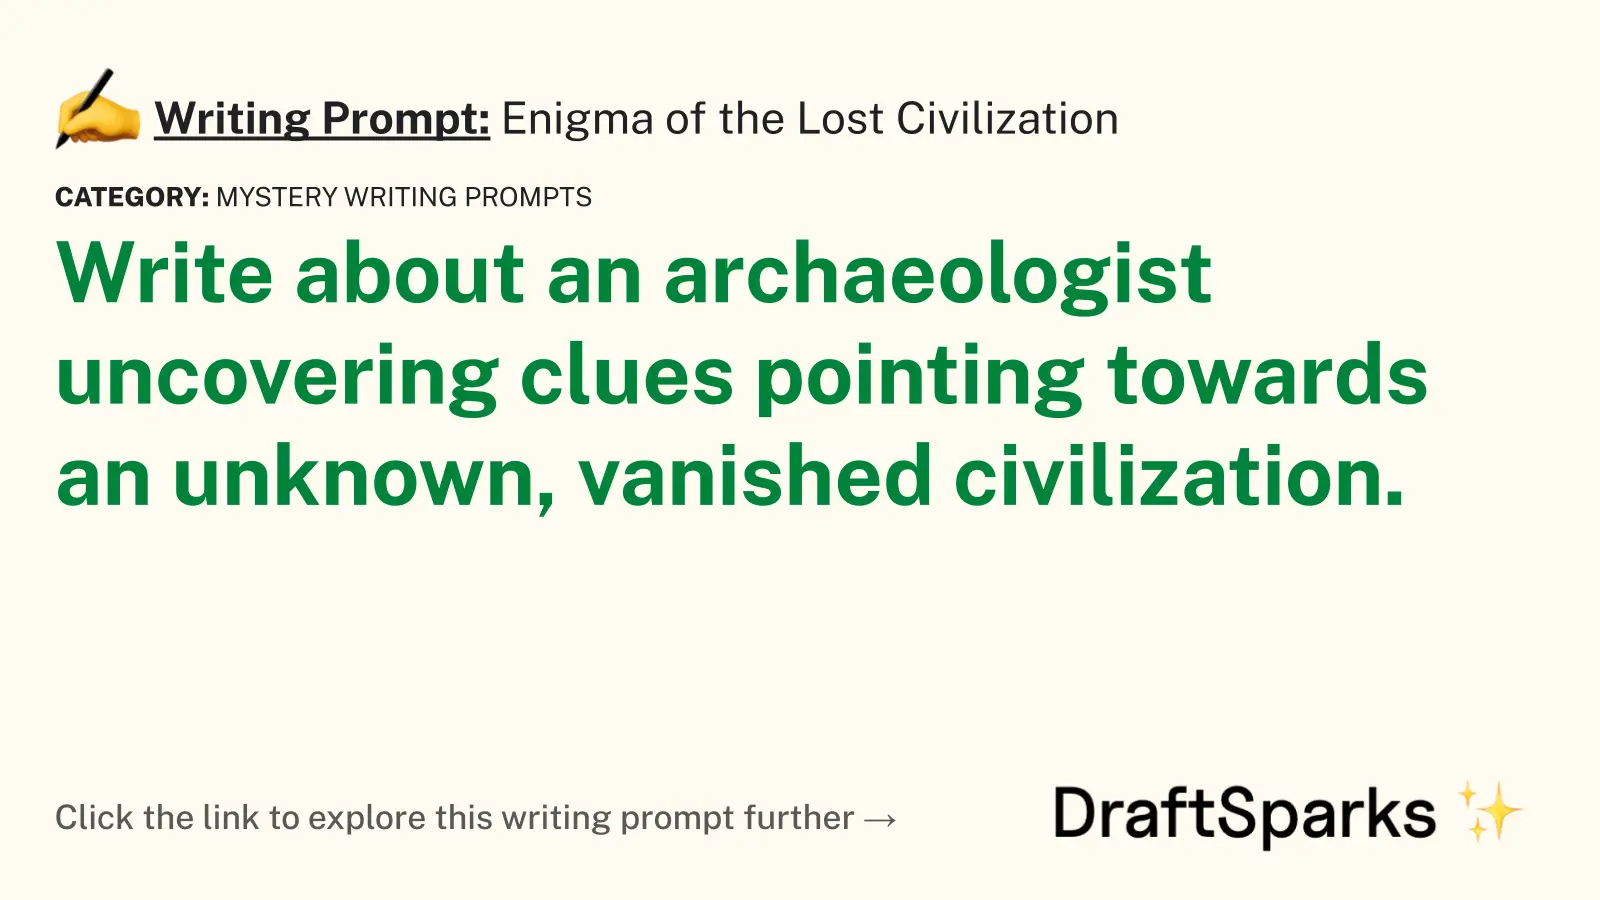 Enigma of the Lost Civilization